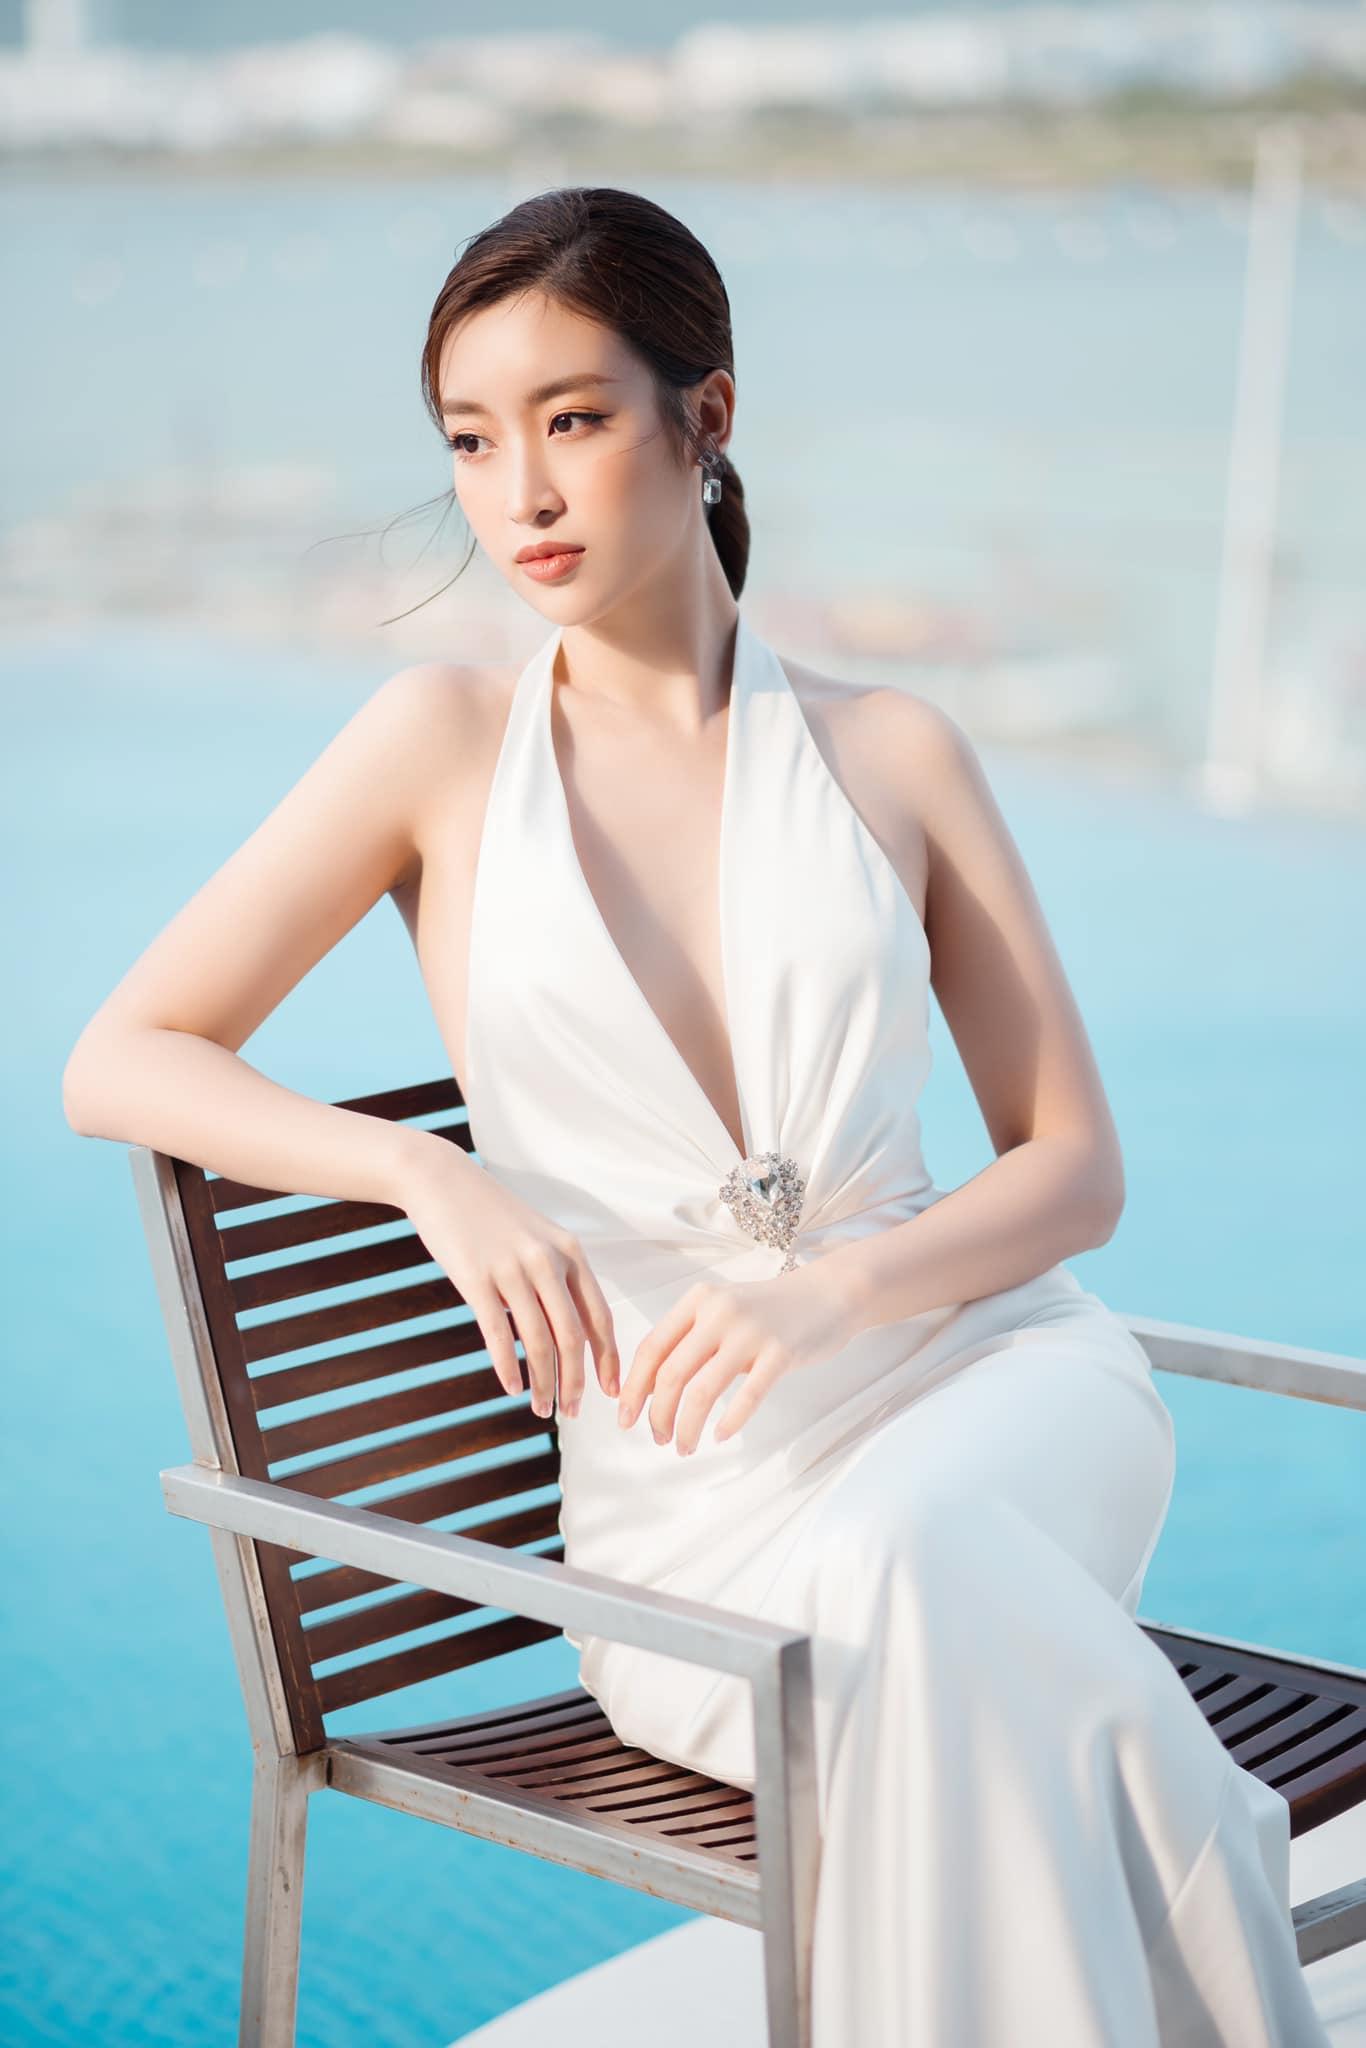 Hoa hậu Đỗ Mỹ Linh: ‘Chồng phải chuộc lỗi khi tôi hờn giận’ - Ảnh 2.